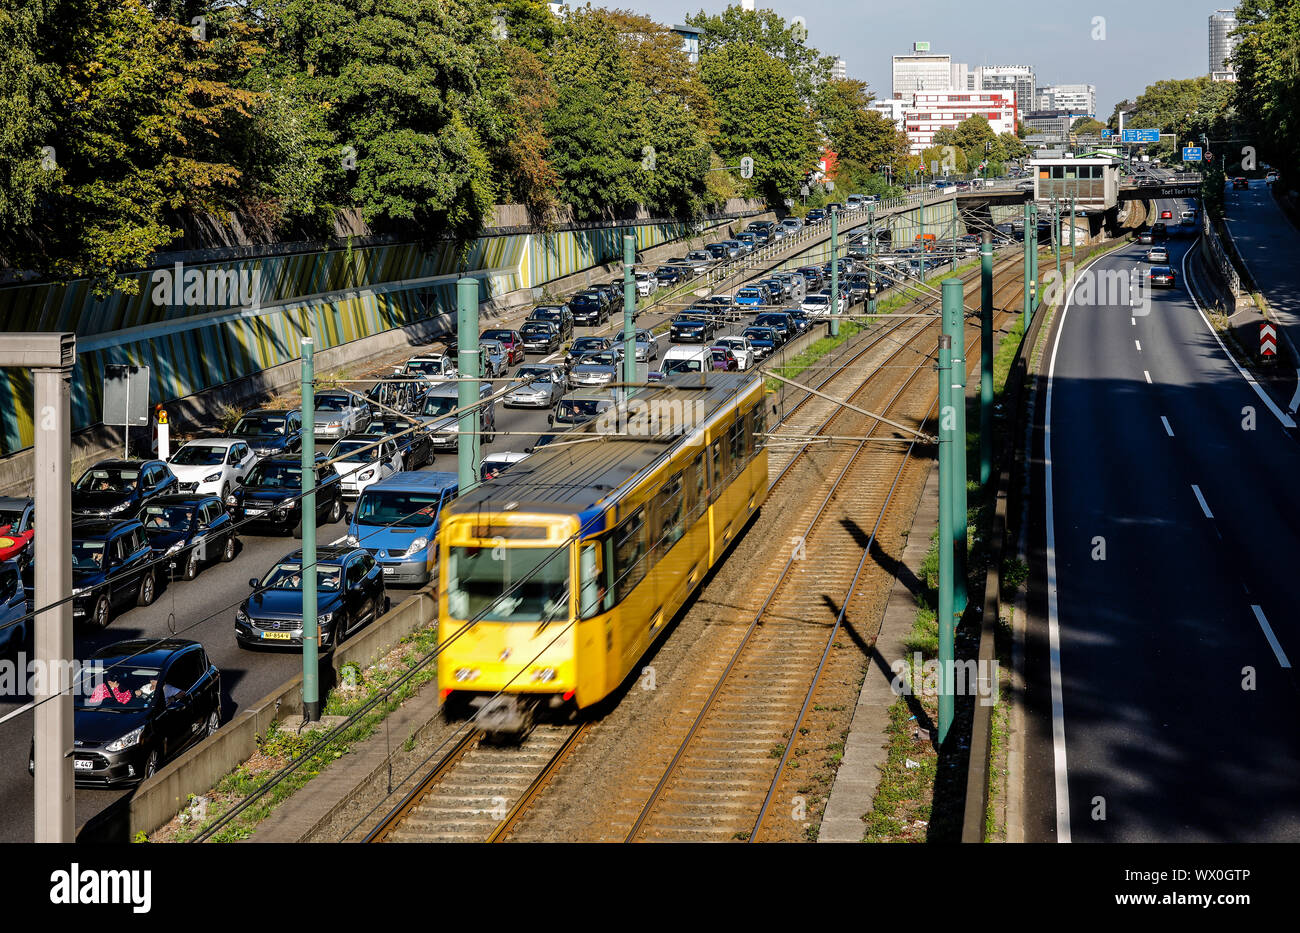 Essen, la zona della Ruhr, Renania settentrionale-Vestfalia, Germania - Incidente la congestione sull'autostrada A40, il trasporto pubblico, qui la metropolitana U18 ha la corsa libera, Foto Stock